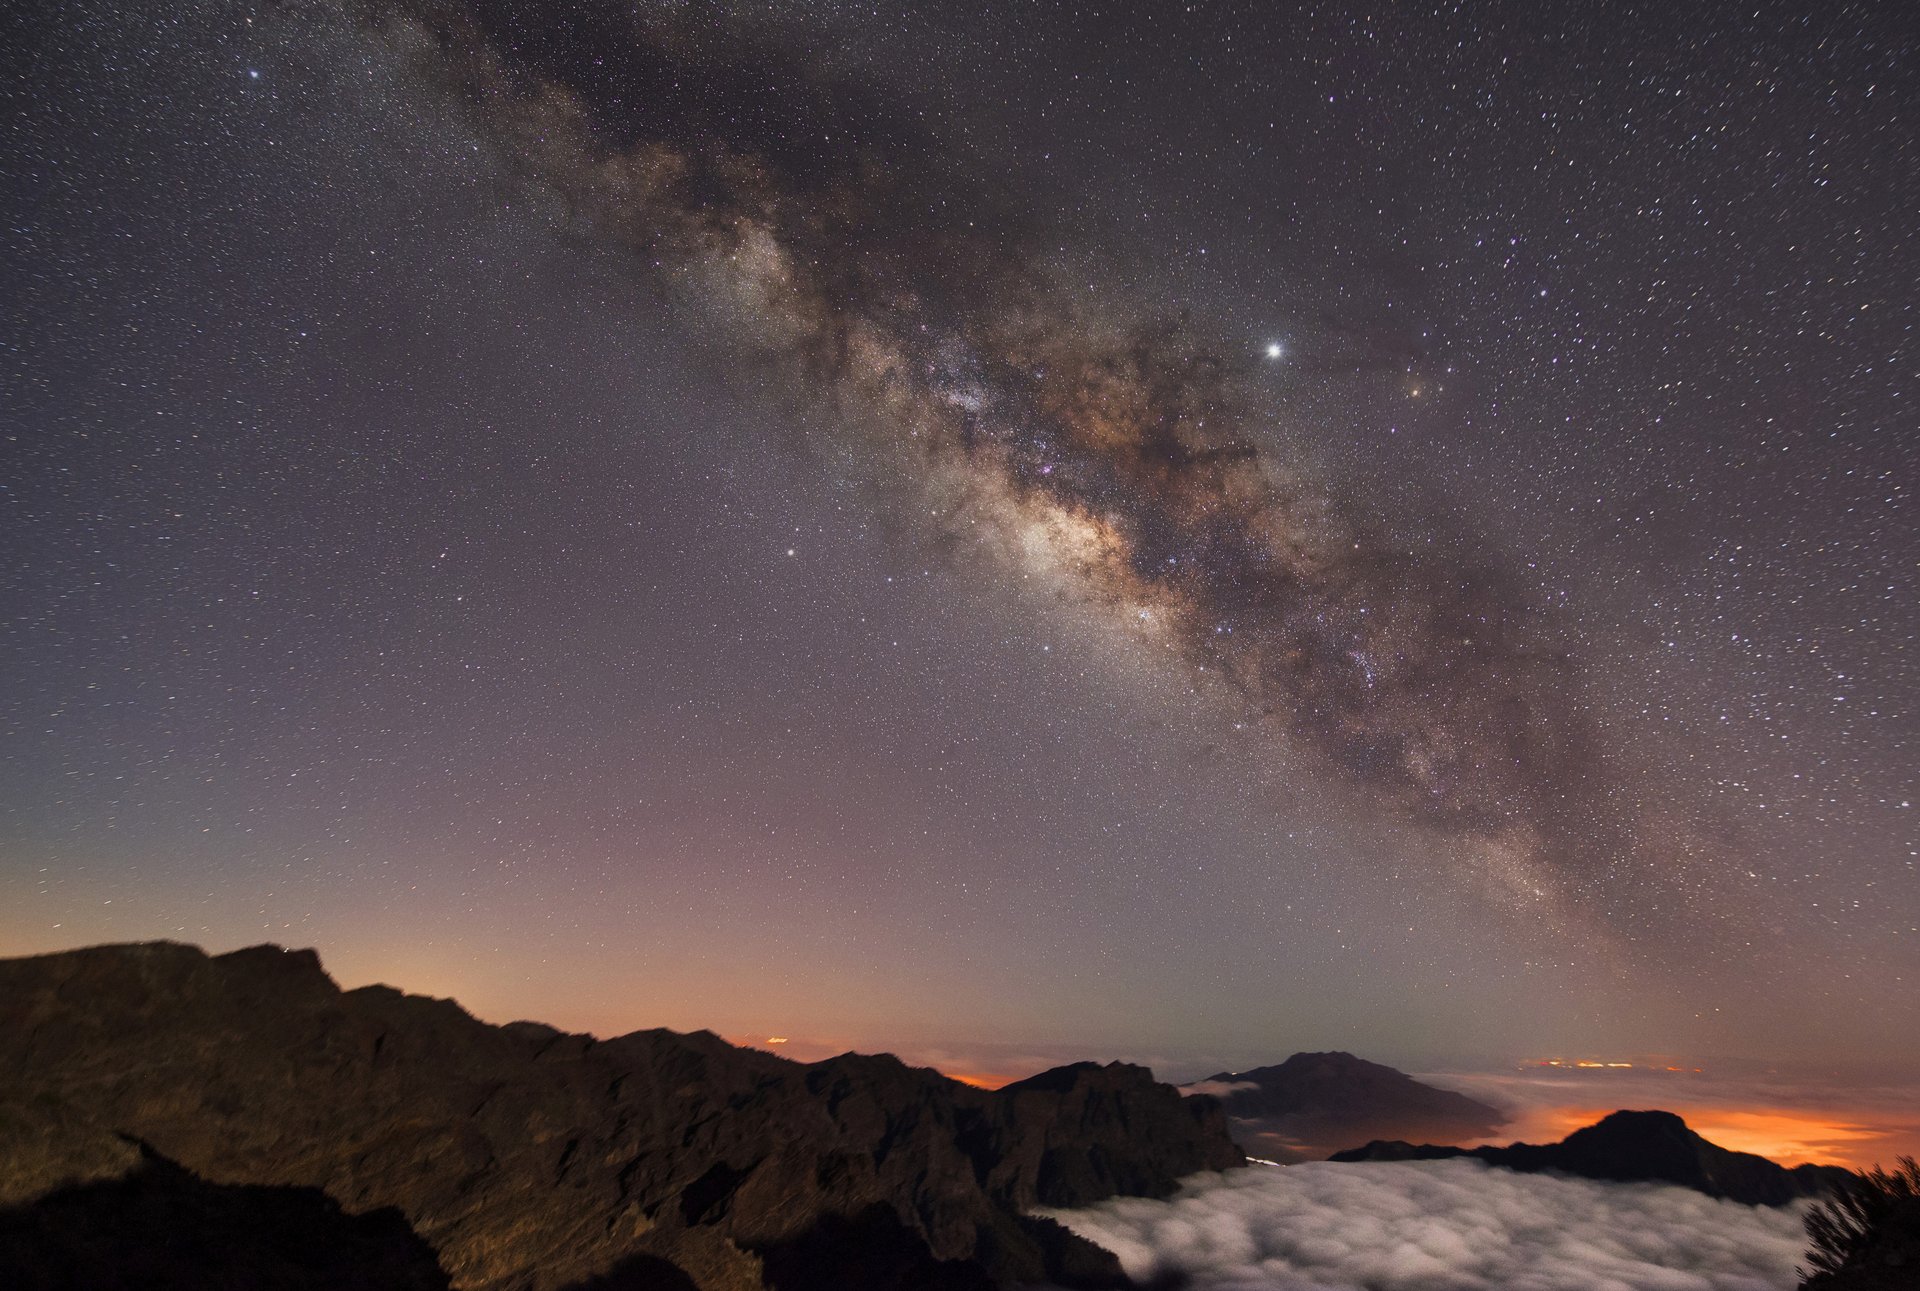 Unten ist eine dunkle Berglandschaft zu sehen, über ihr ist der Nachthimmel mit leuchtenden Sternen und einem grauen Galaxienebel.